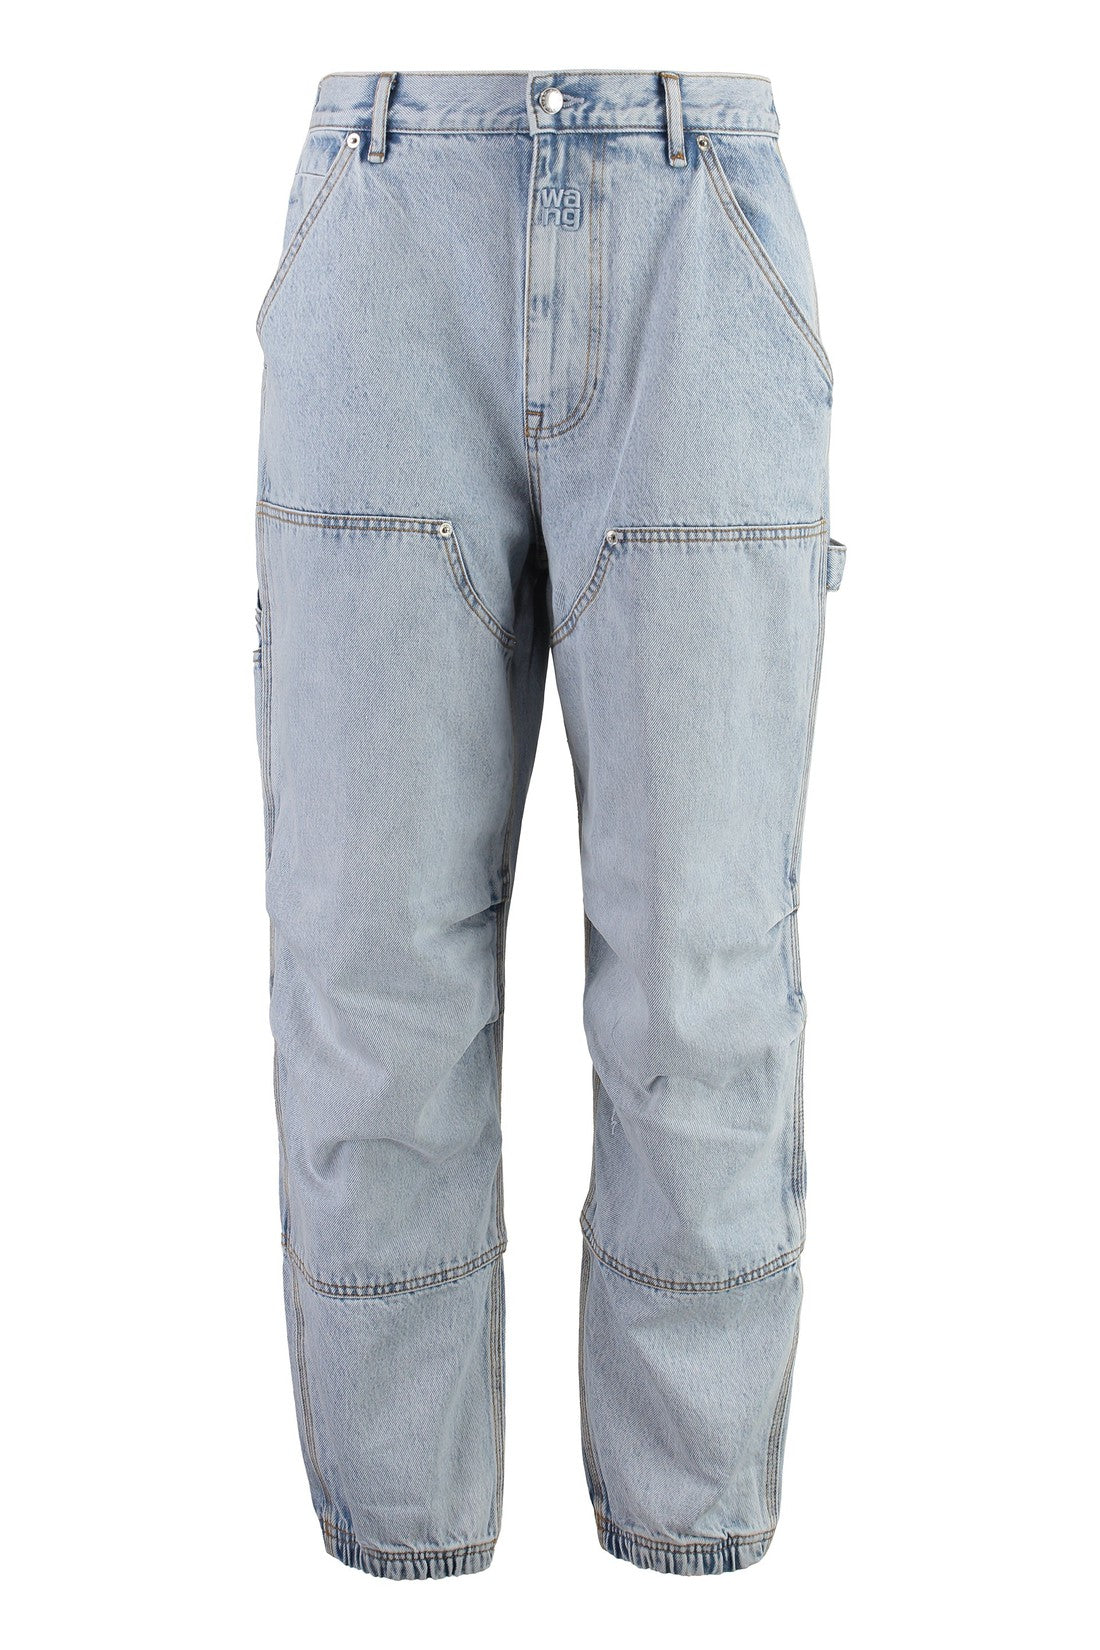 Alexander Wang-OUTLET-SALE-Carpenter Wide-leg jeans-ARCHIVIST